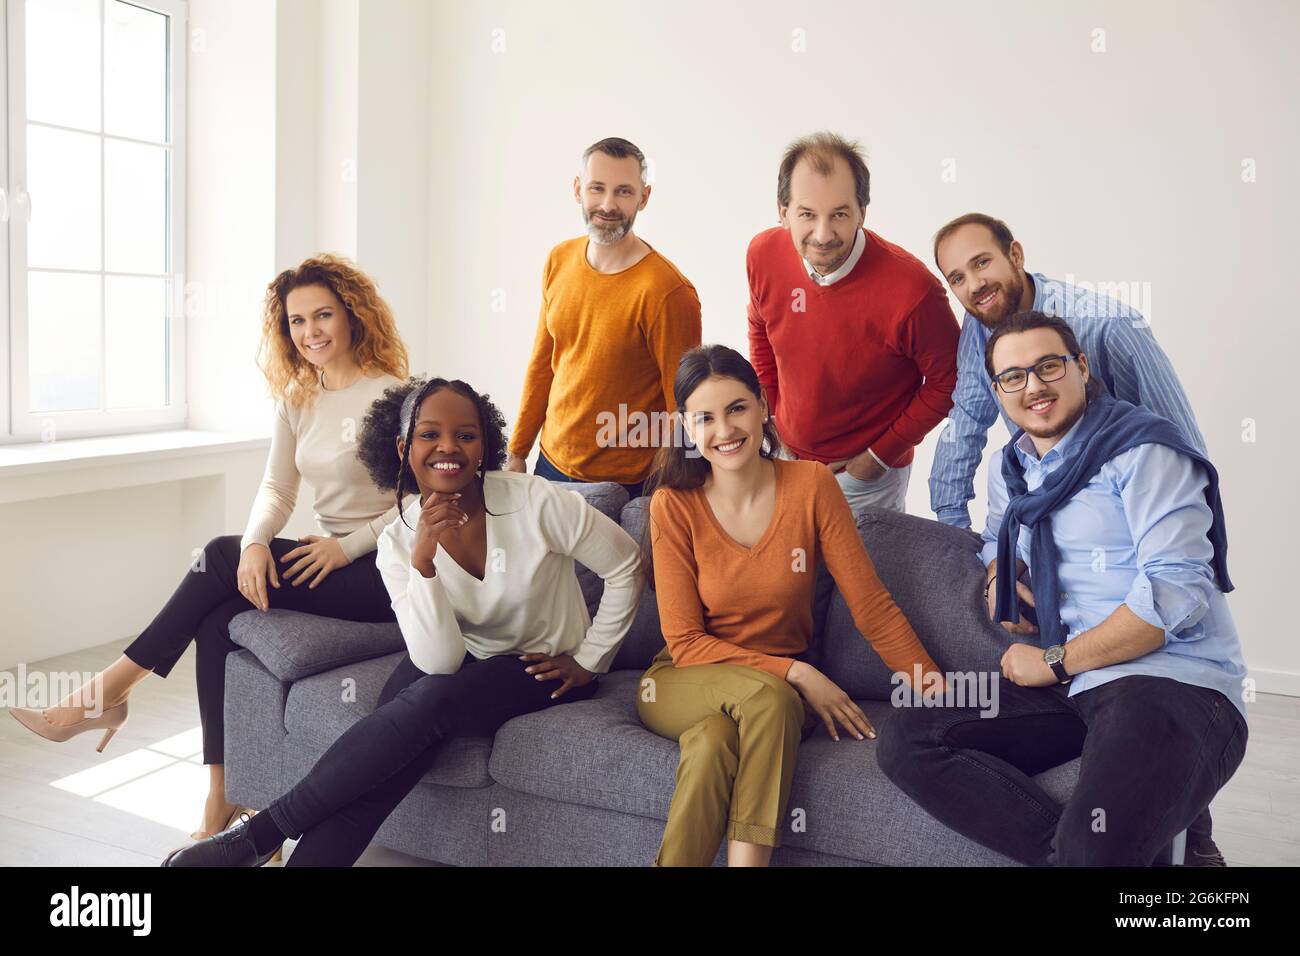 Groupe de personnes d'âge et d'ethnicité différents assis sur le canapé regardant la caméra Banque D'Images